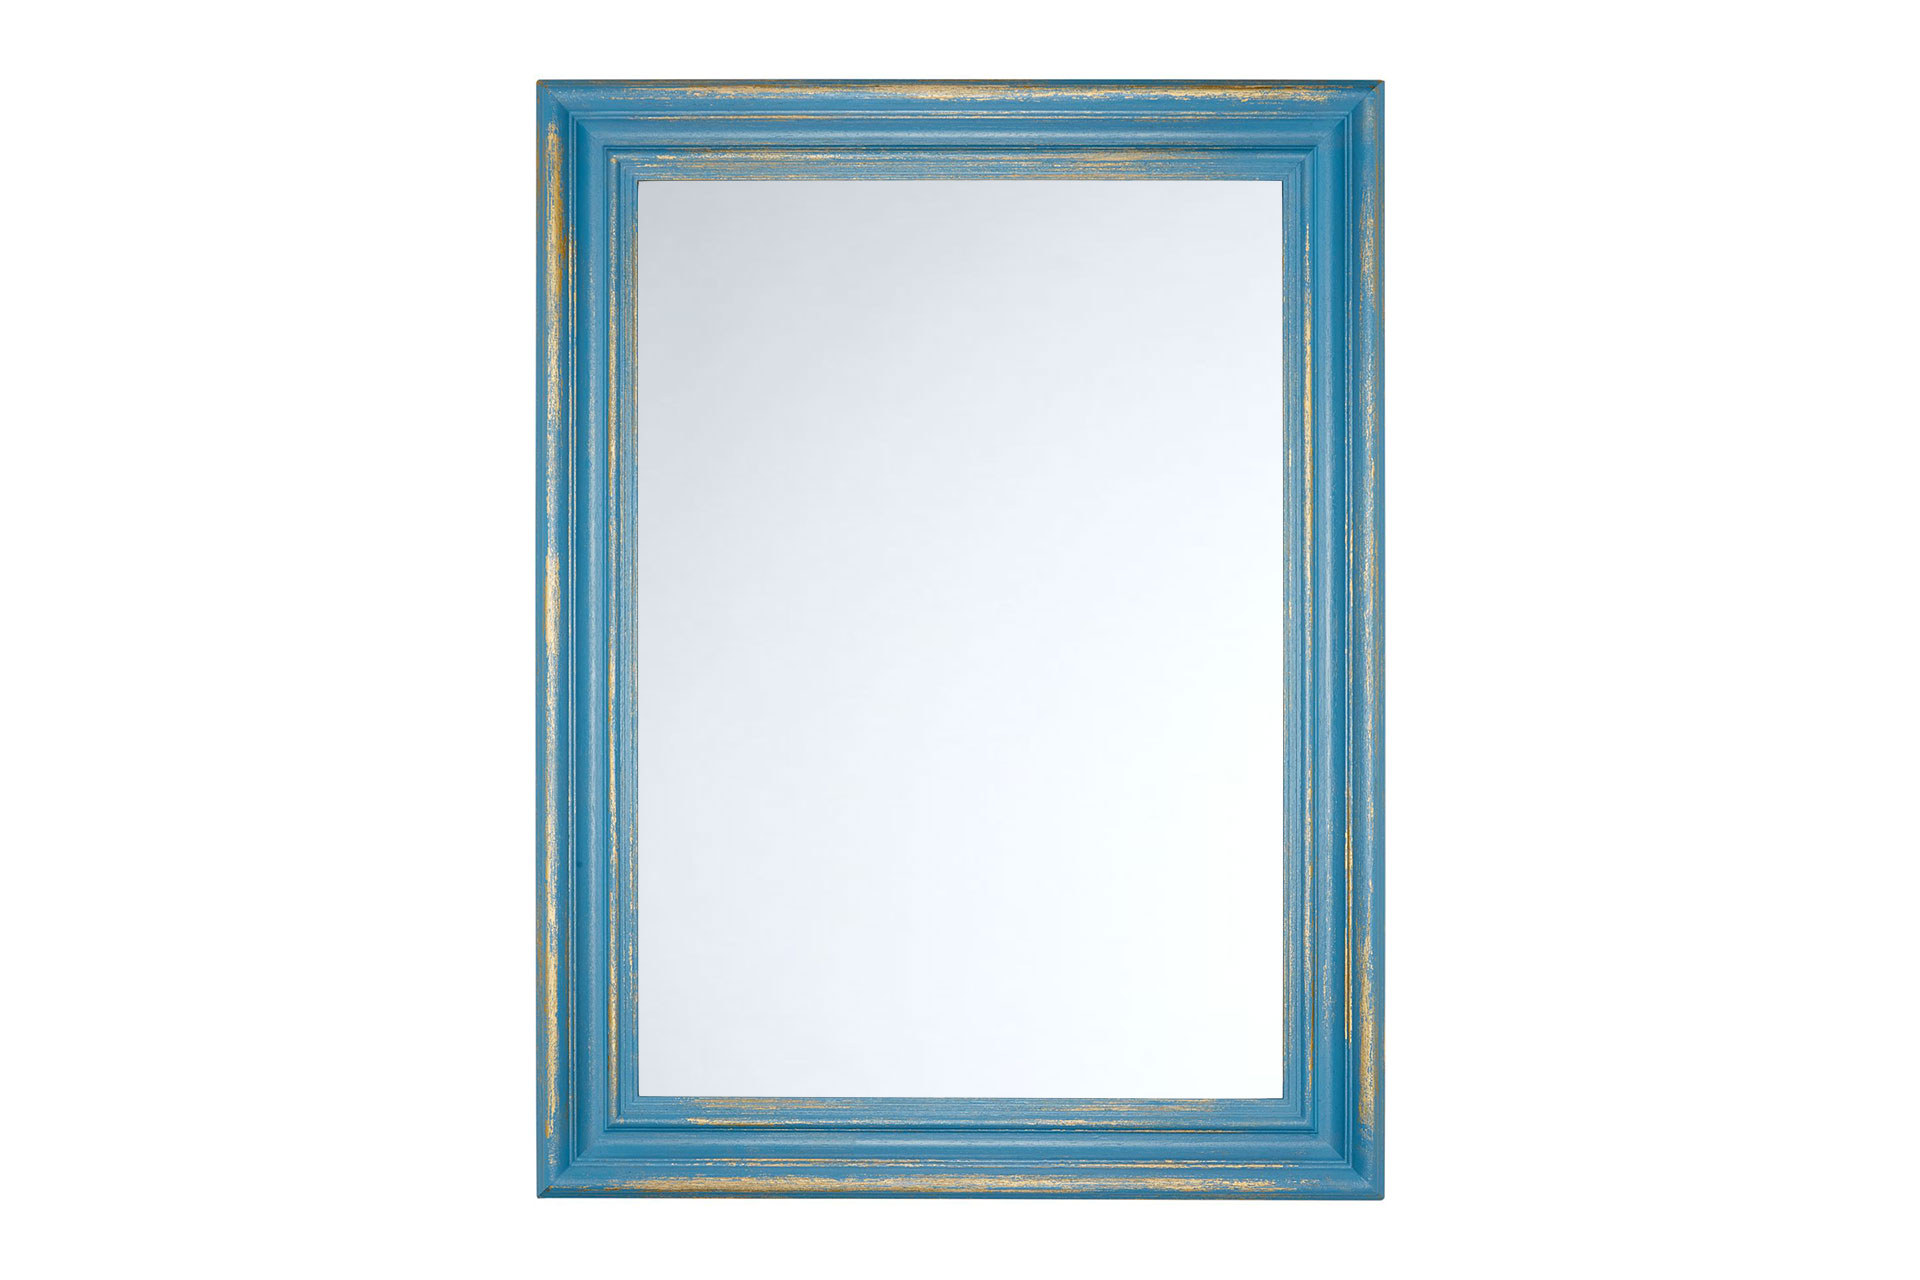 Wandspiegel Modell Le Havre, Gold/Hellblau Form: rechteckig Herstellung: by ASR-Rahmendesign Material: Holz, Wandspiegel, Shabby-Chic, Rahmen mit Spiegel